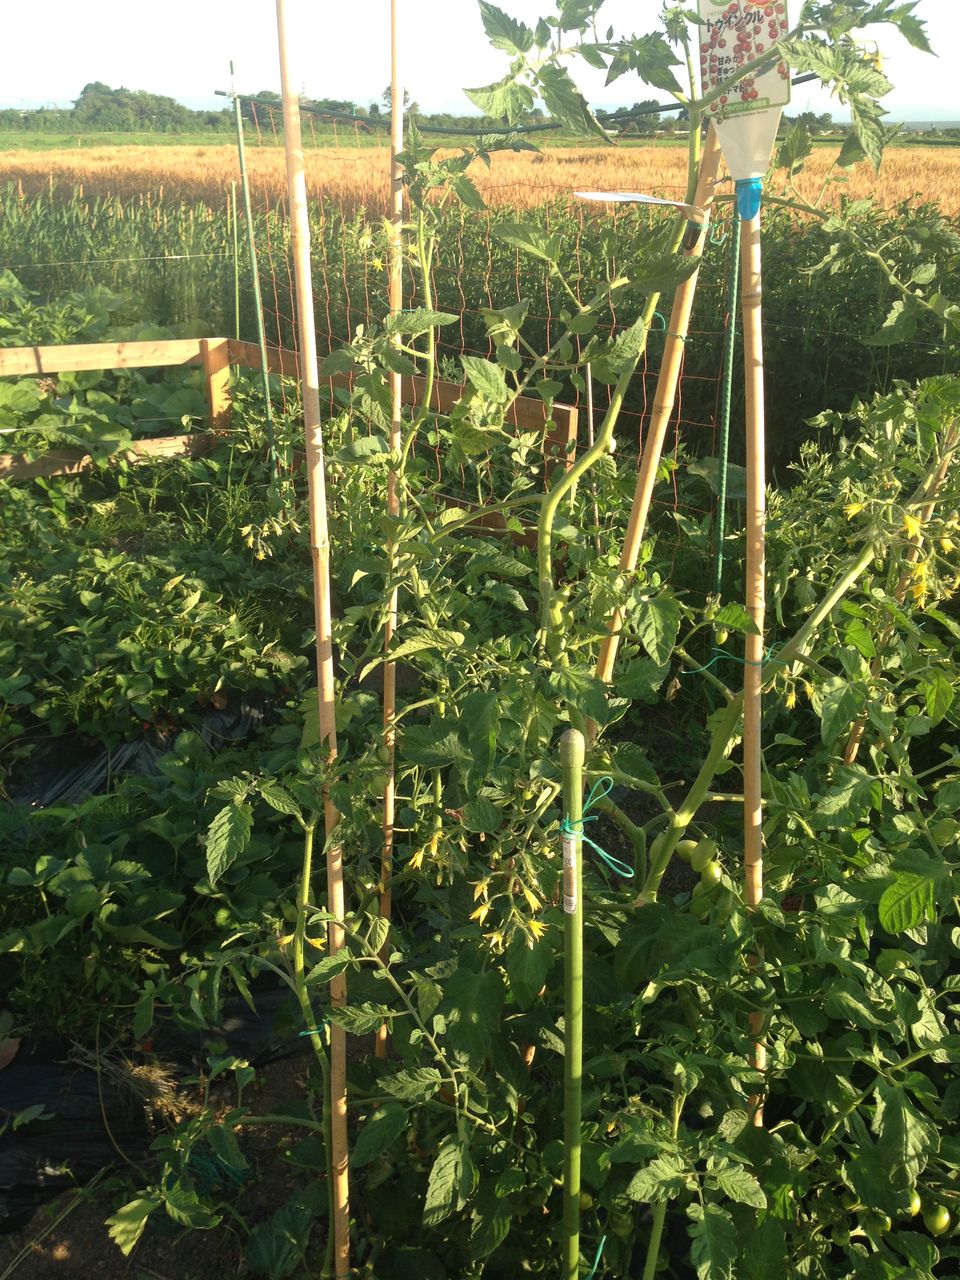 家庭菜園 北海道発 ミニトマトの３本仕立て 脇芽の挿芽 道産子サラリーマンの北海道生活を楽しむ方法